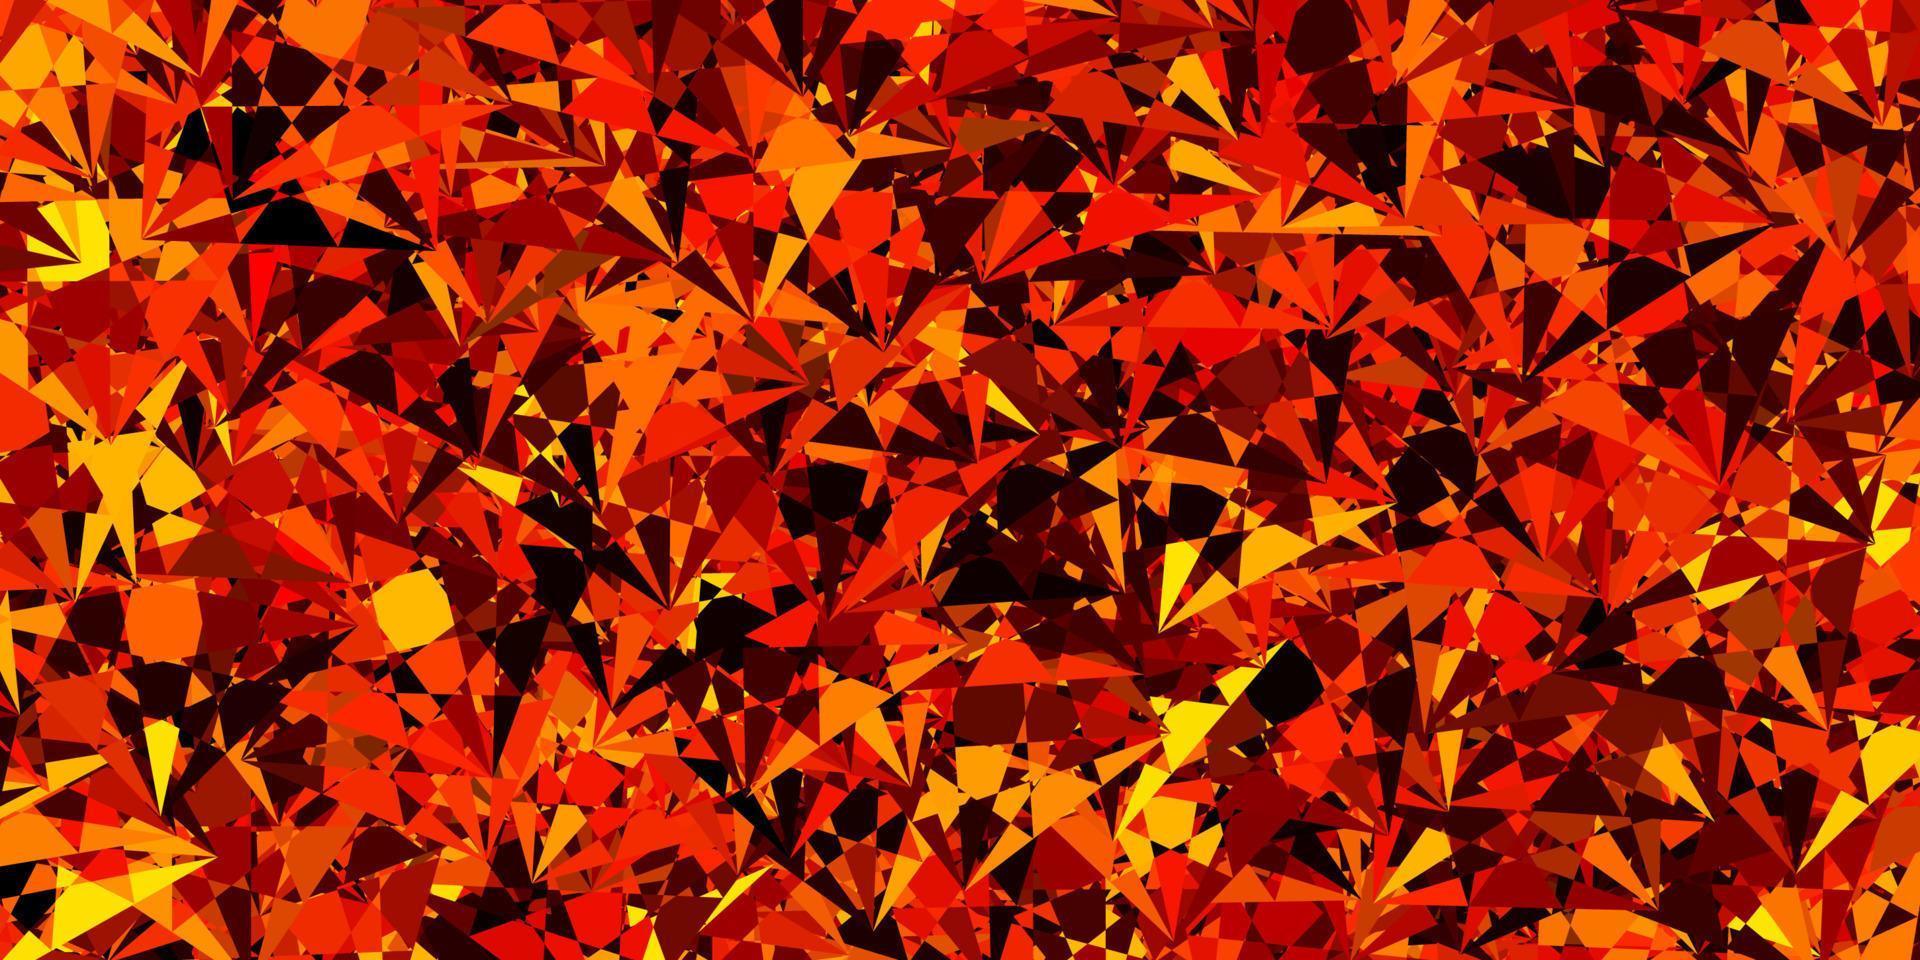 sfondo vettoriale arancione scuro con triangoli.